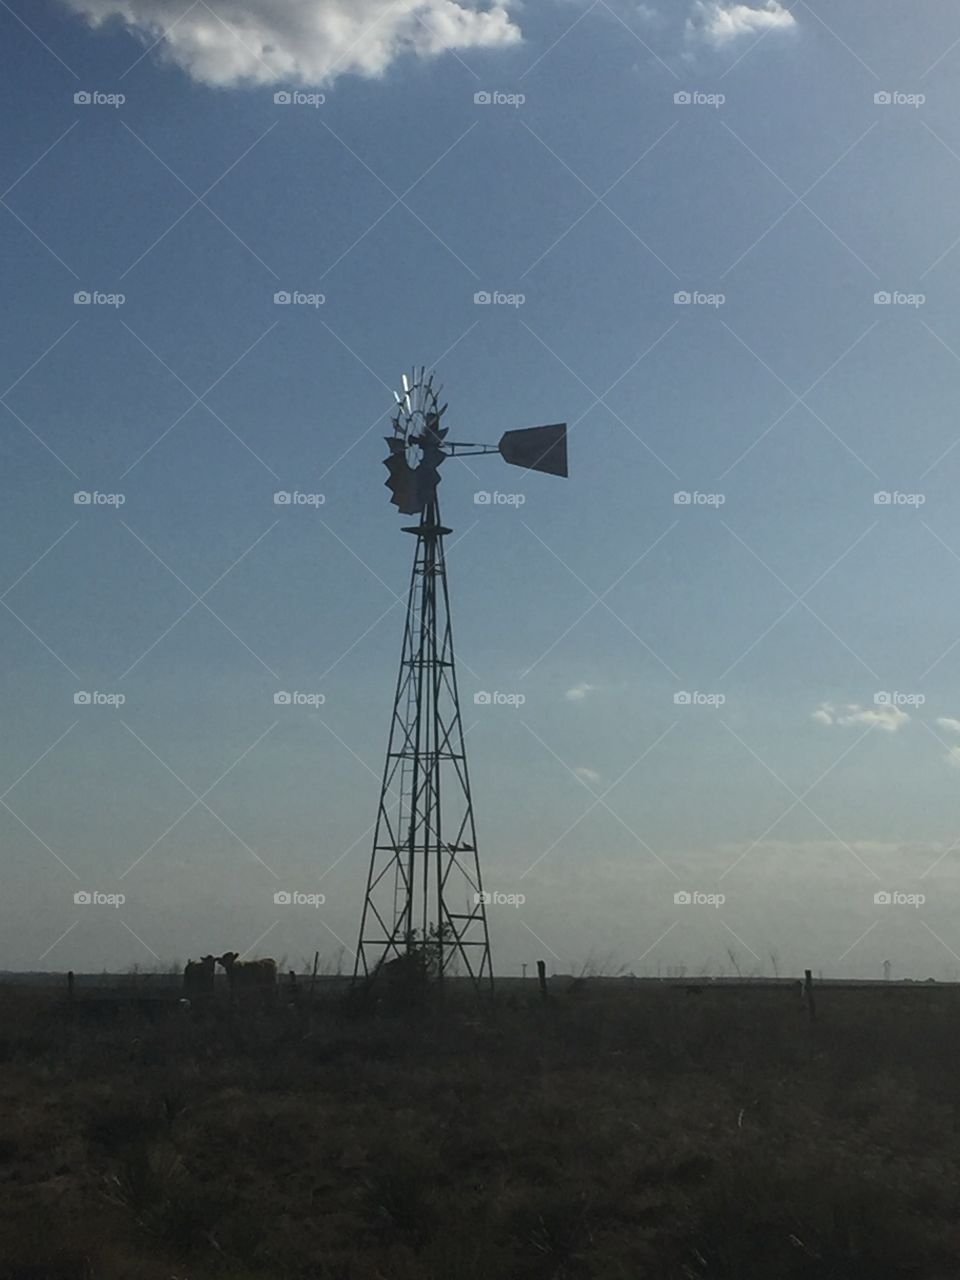 Amarillo, Texas Windmill, 2016